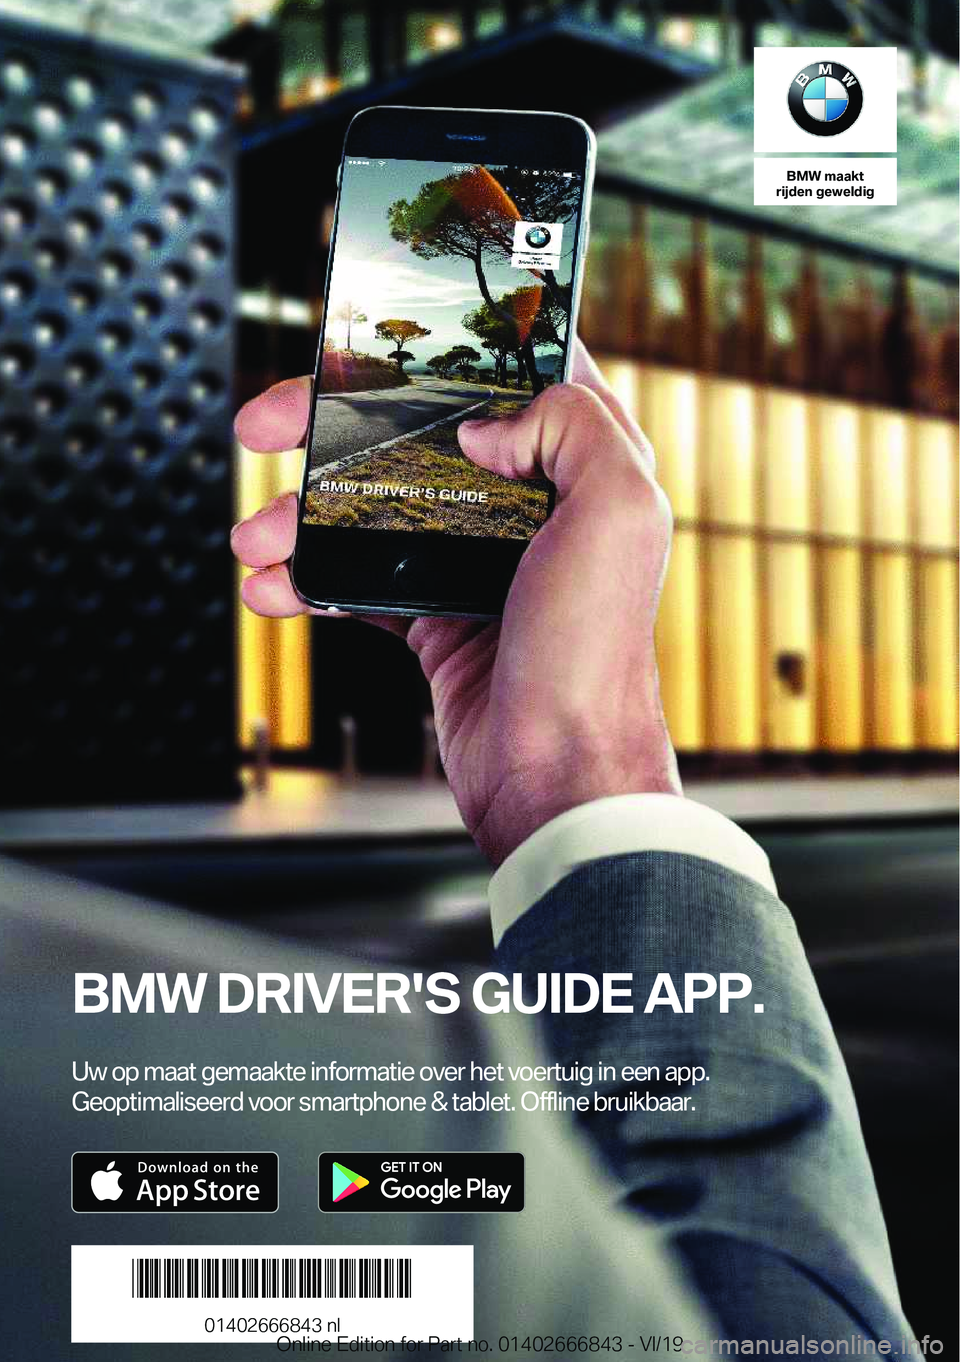 BMW X3 M 2020  Instructieboekjes (in Dutch) �B�M�W��m�a�a�k�t
�r�i�j�d�e�n��g�e�w�e�l�d�i�g
�B�M�W��D�R�I�V�E�R�'�S��G�U�I�D�E��A�P�P�.
�U�w��o�p��m�a�a�t��g�e�m�a�a�k�t�e��i�n�f�o�r�m�a�t�i�e��o�v�e�r��h�e�t��v�o�e�r�t�u�i�g��